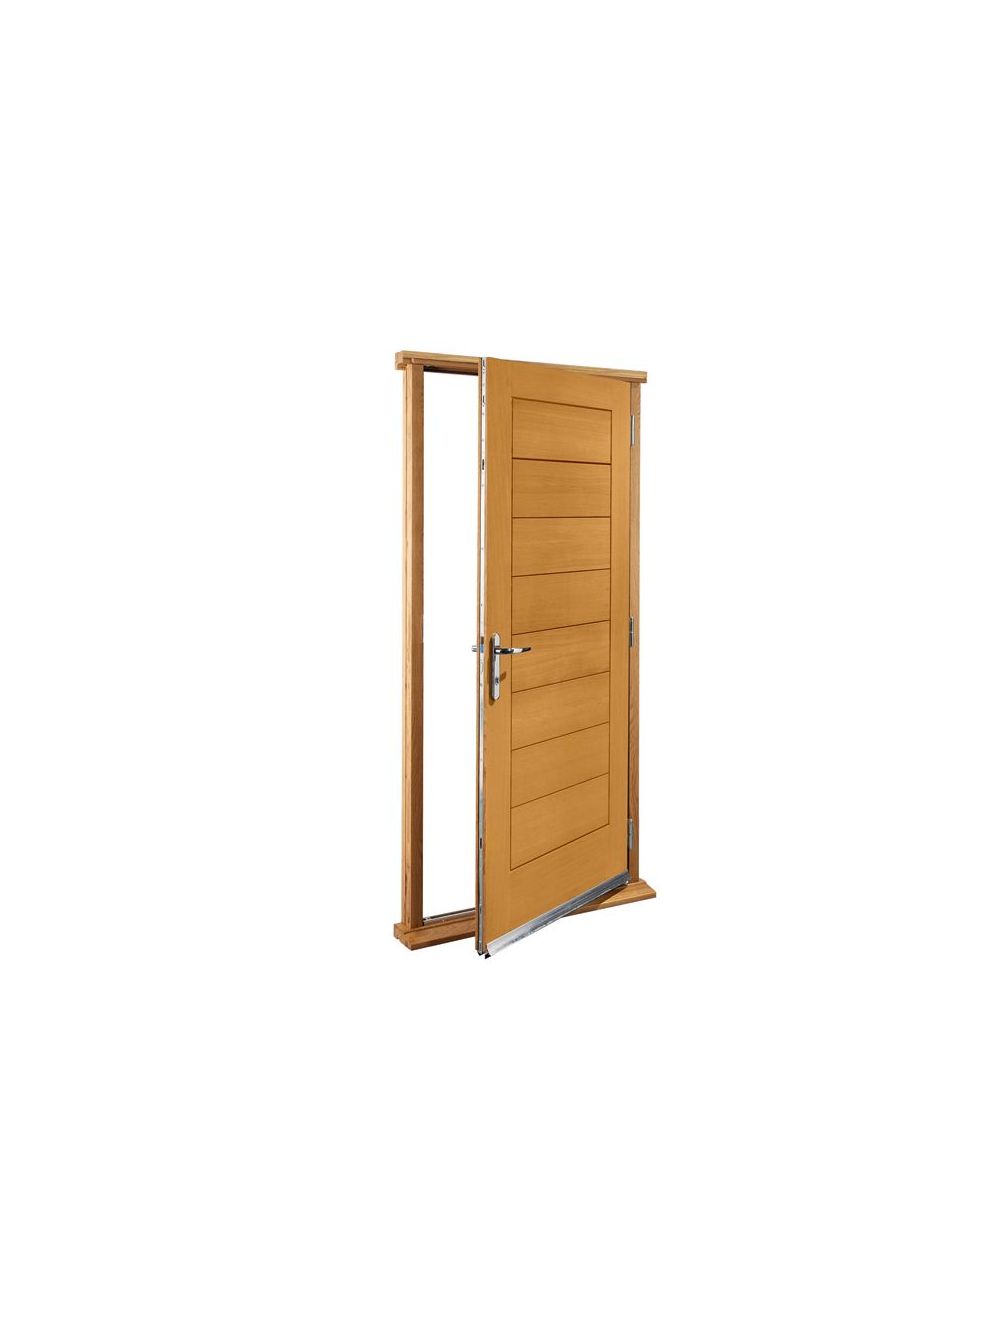 Modena Oak Pre-Hung External Door Set, Modern Doors